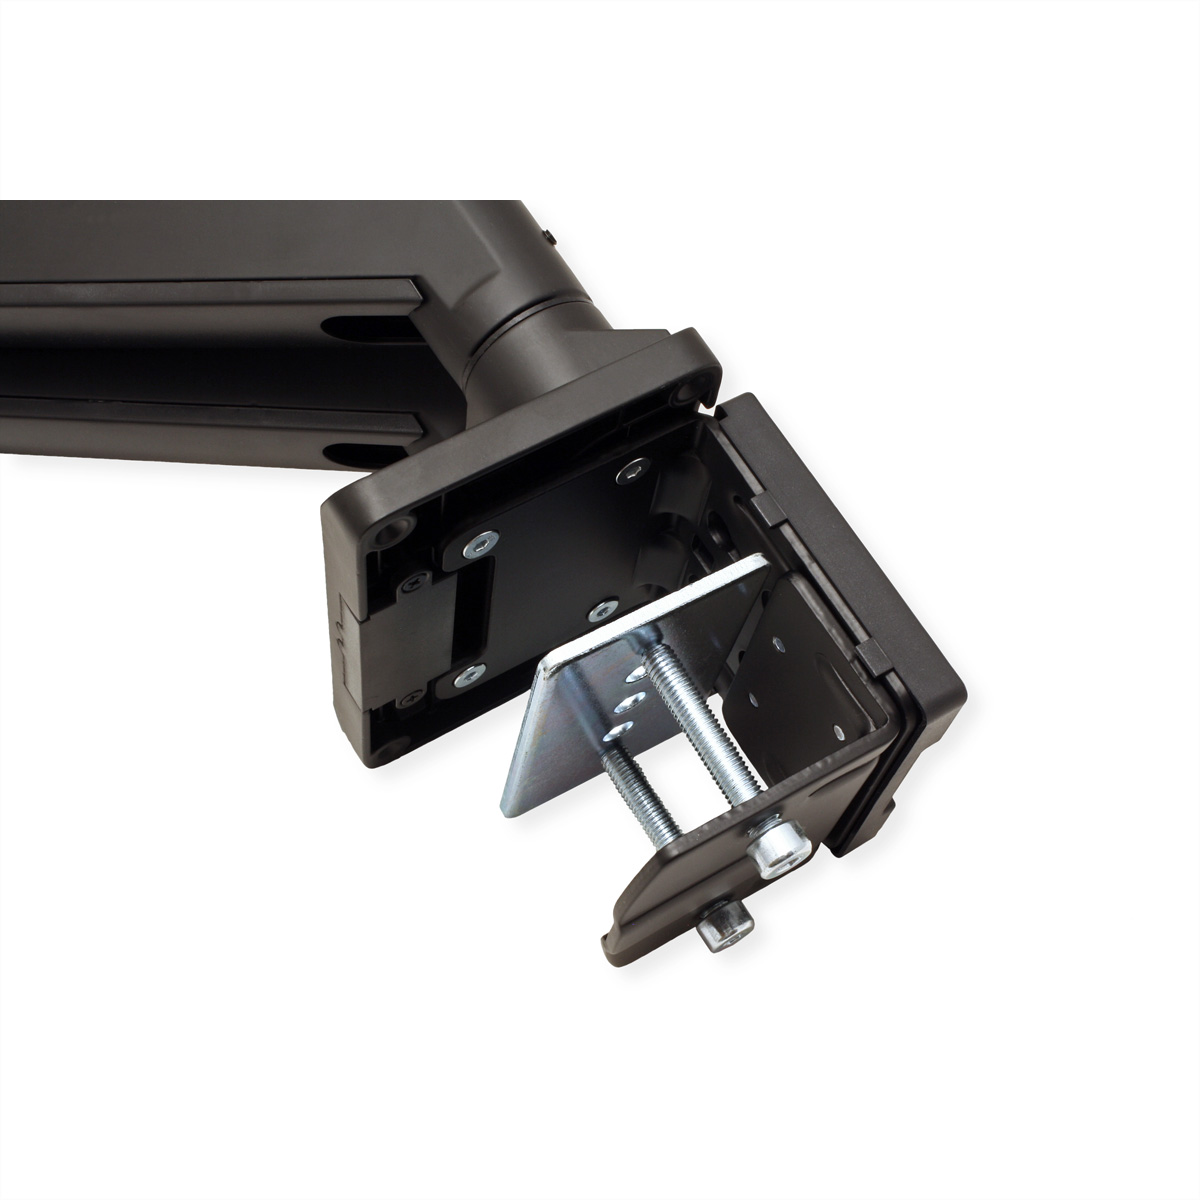 LCD-Doppelarm, Monitorarm, Tischmontage, Gasfeder, Tischmontage je kg Gelenke, ROLINE max. 5 15